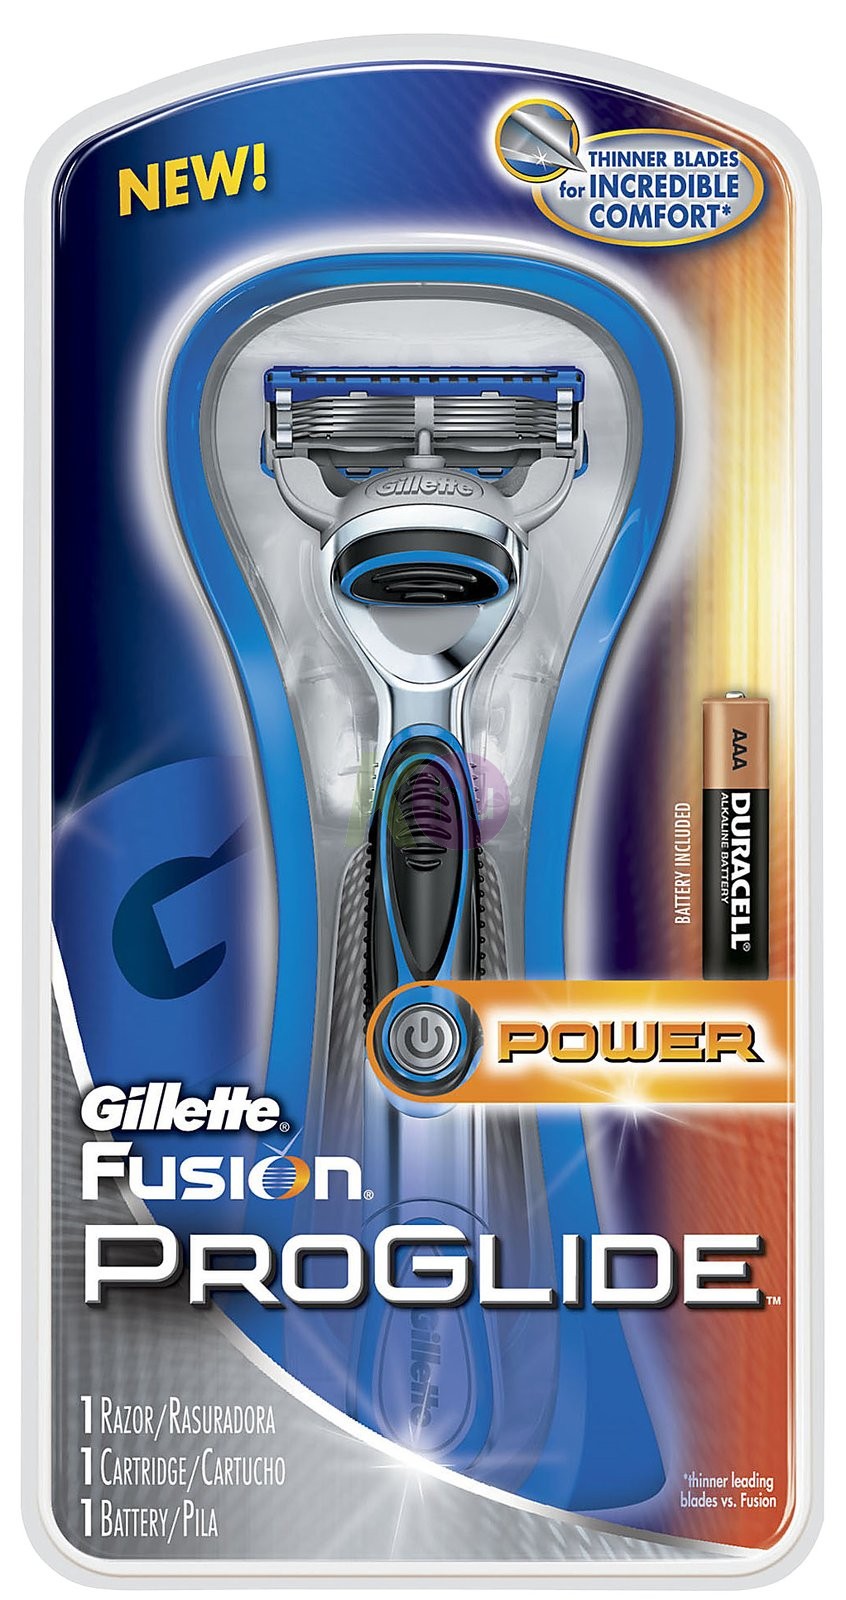 Gillette Gil. Fusion Proglide Power borotvakészülék Érzékeny 15448804